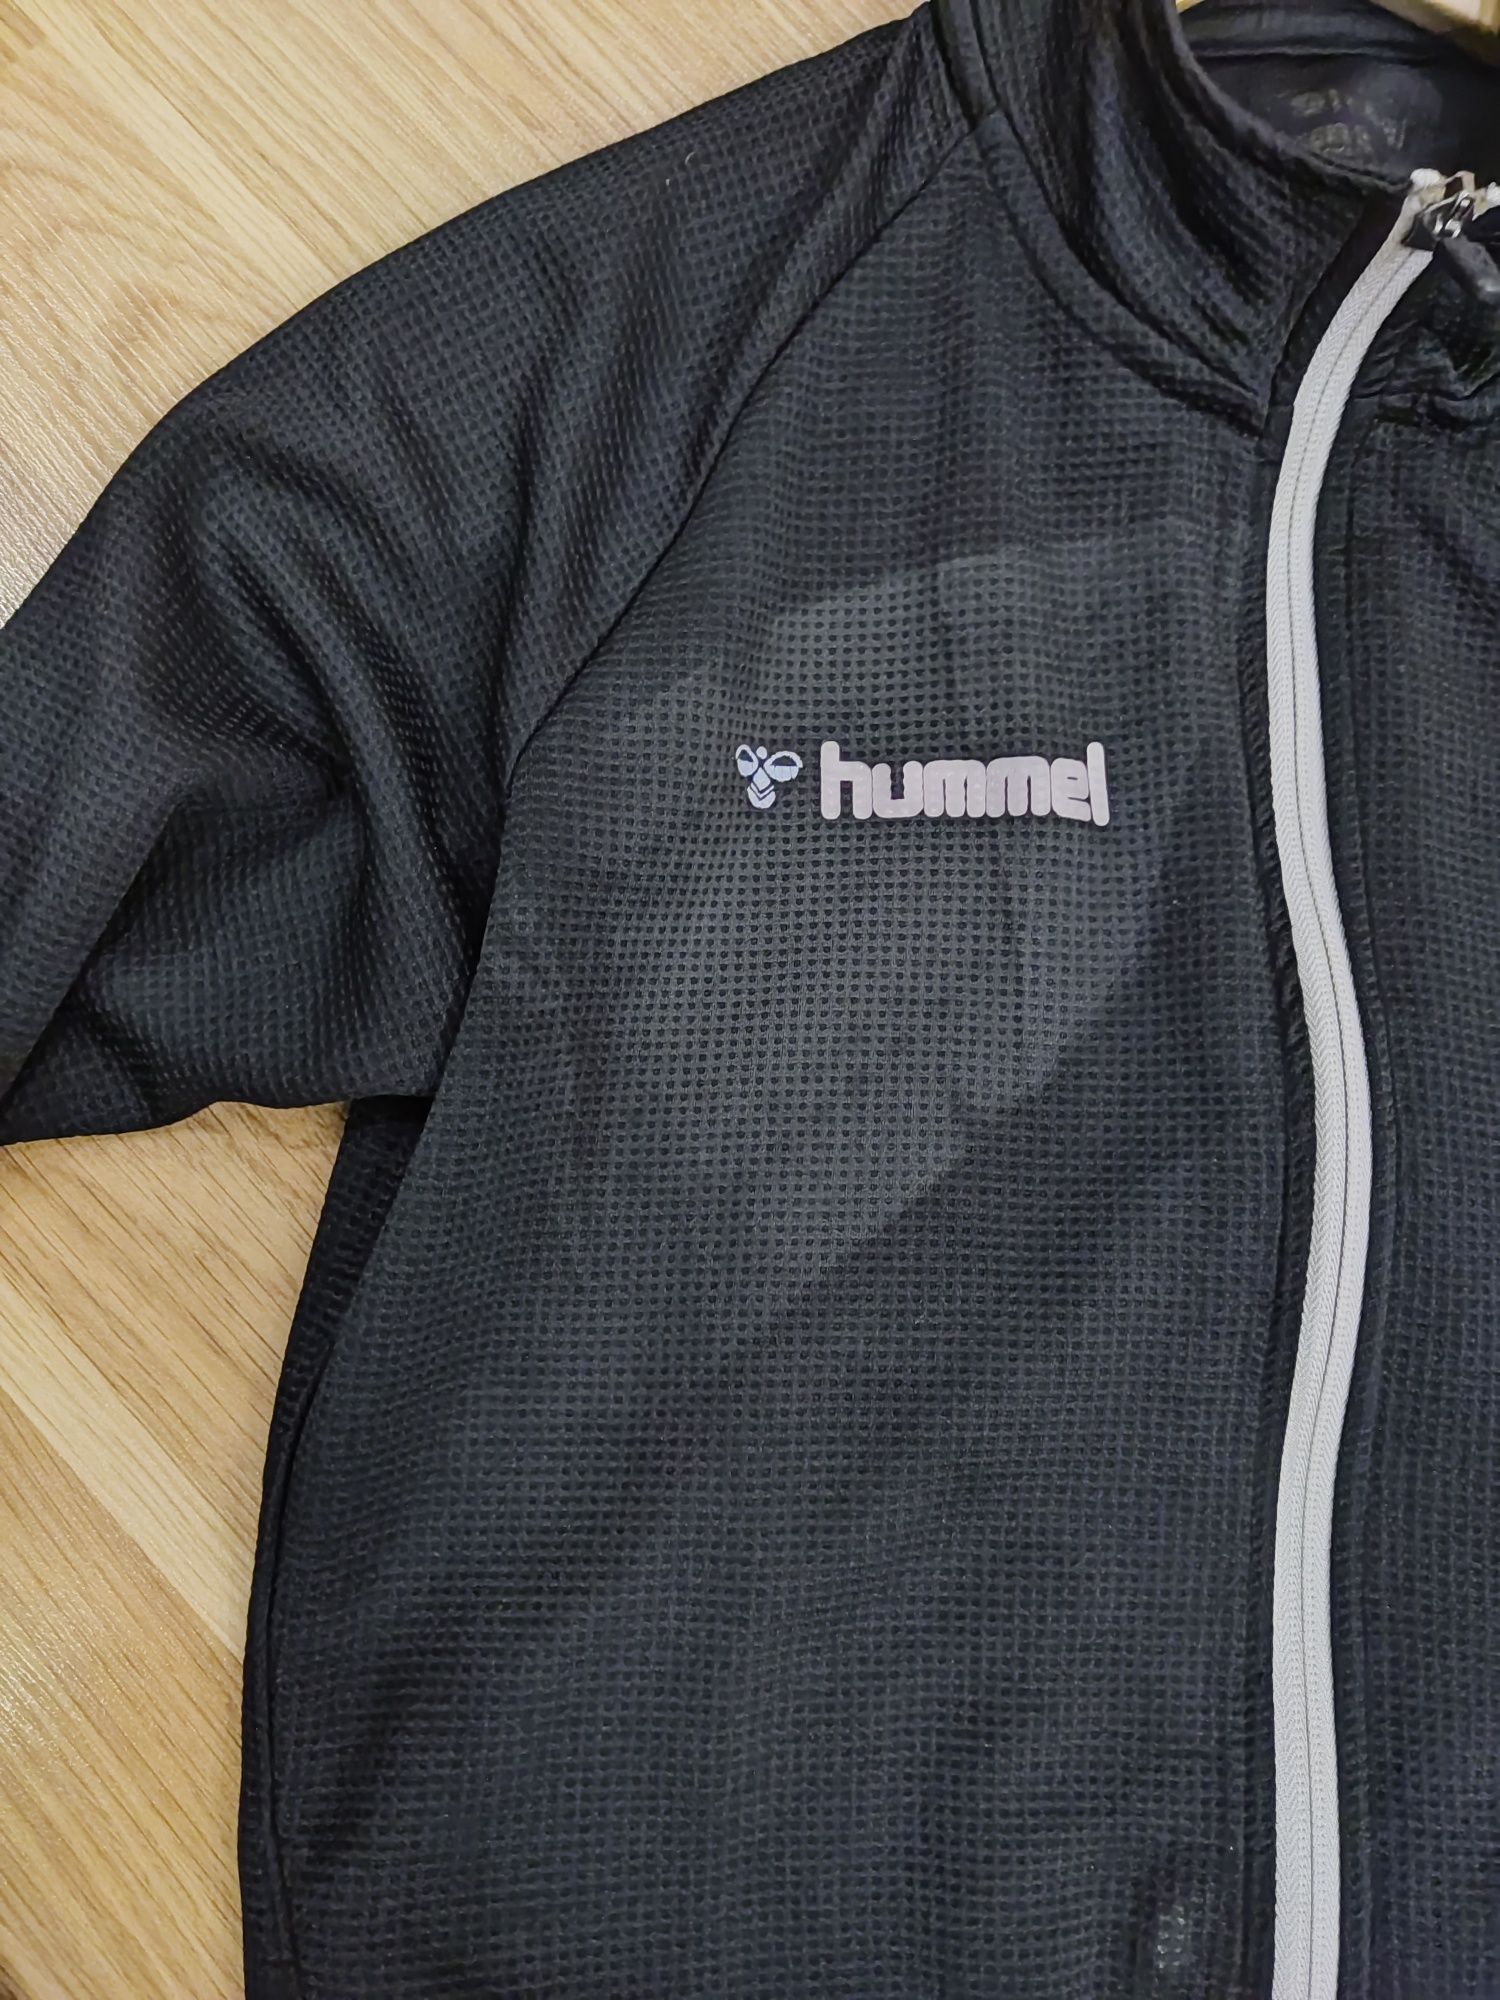 Bluza czarna sportowa Hummel S M chłopięca